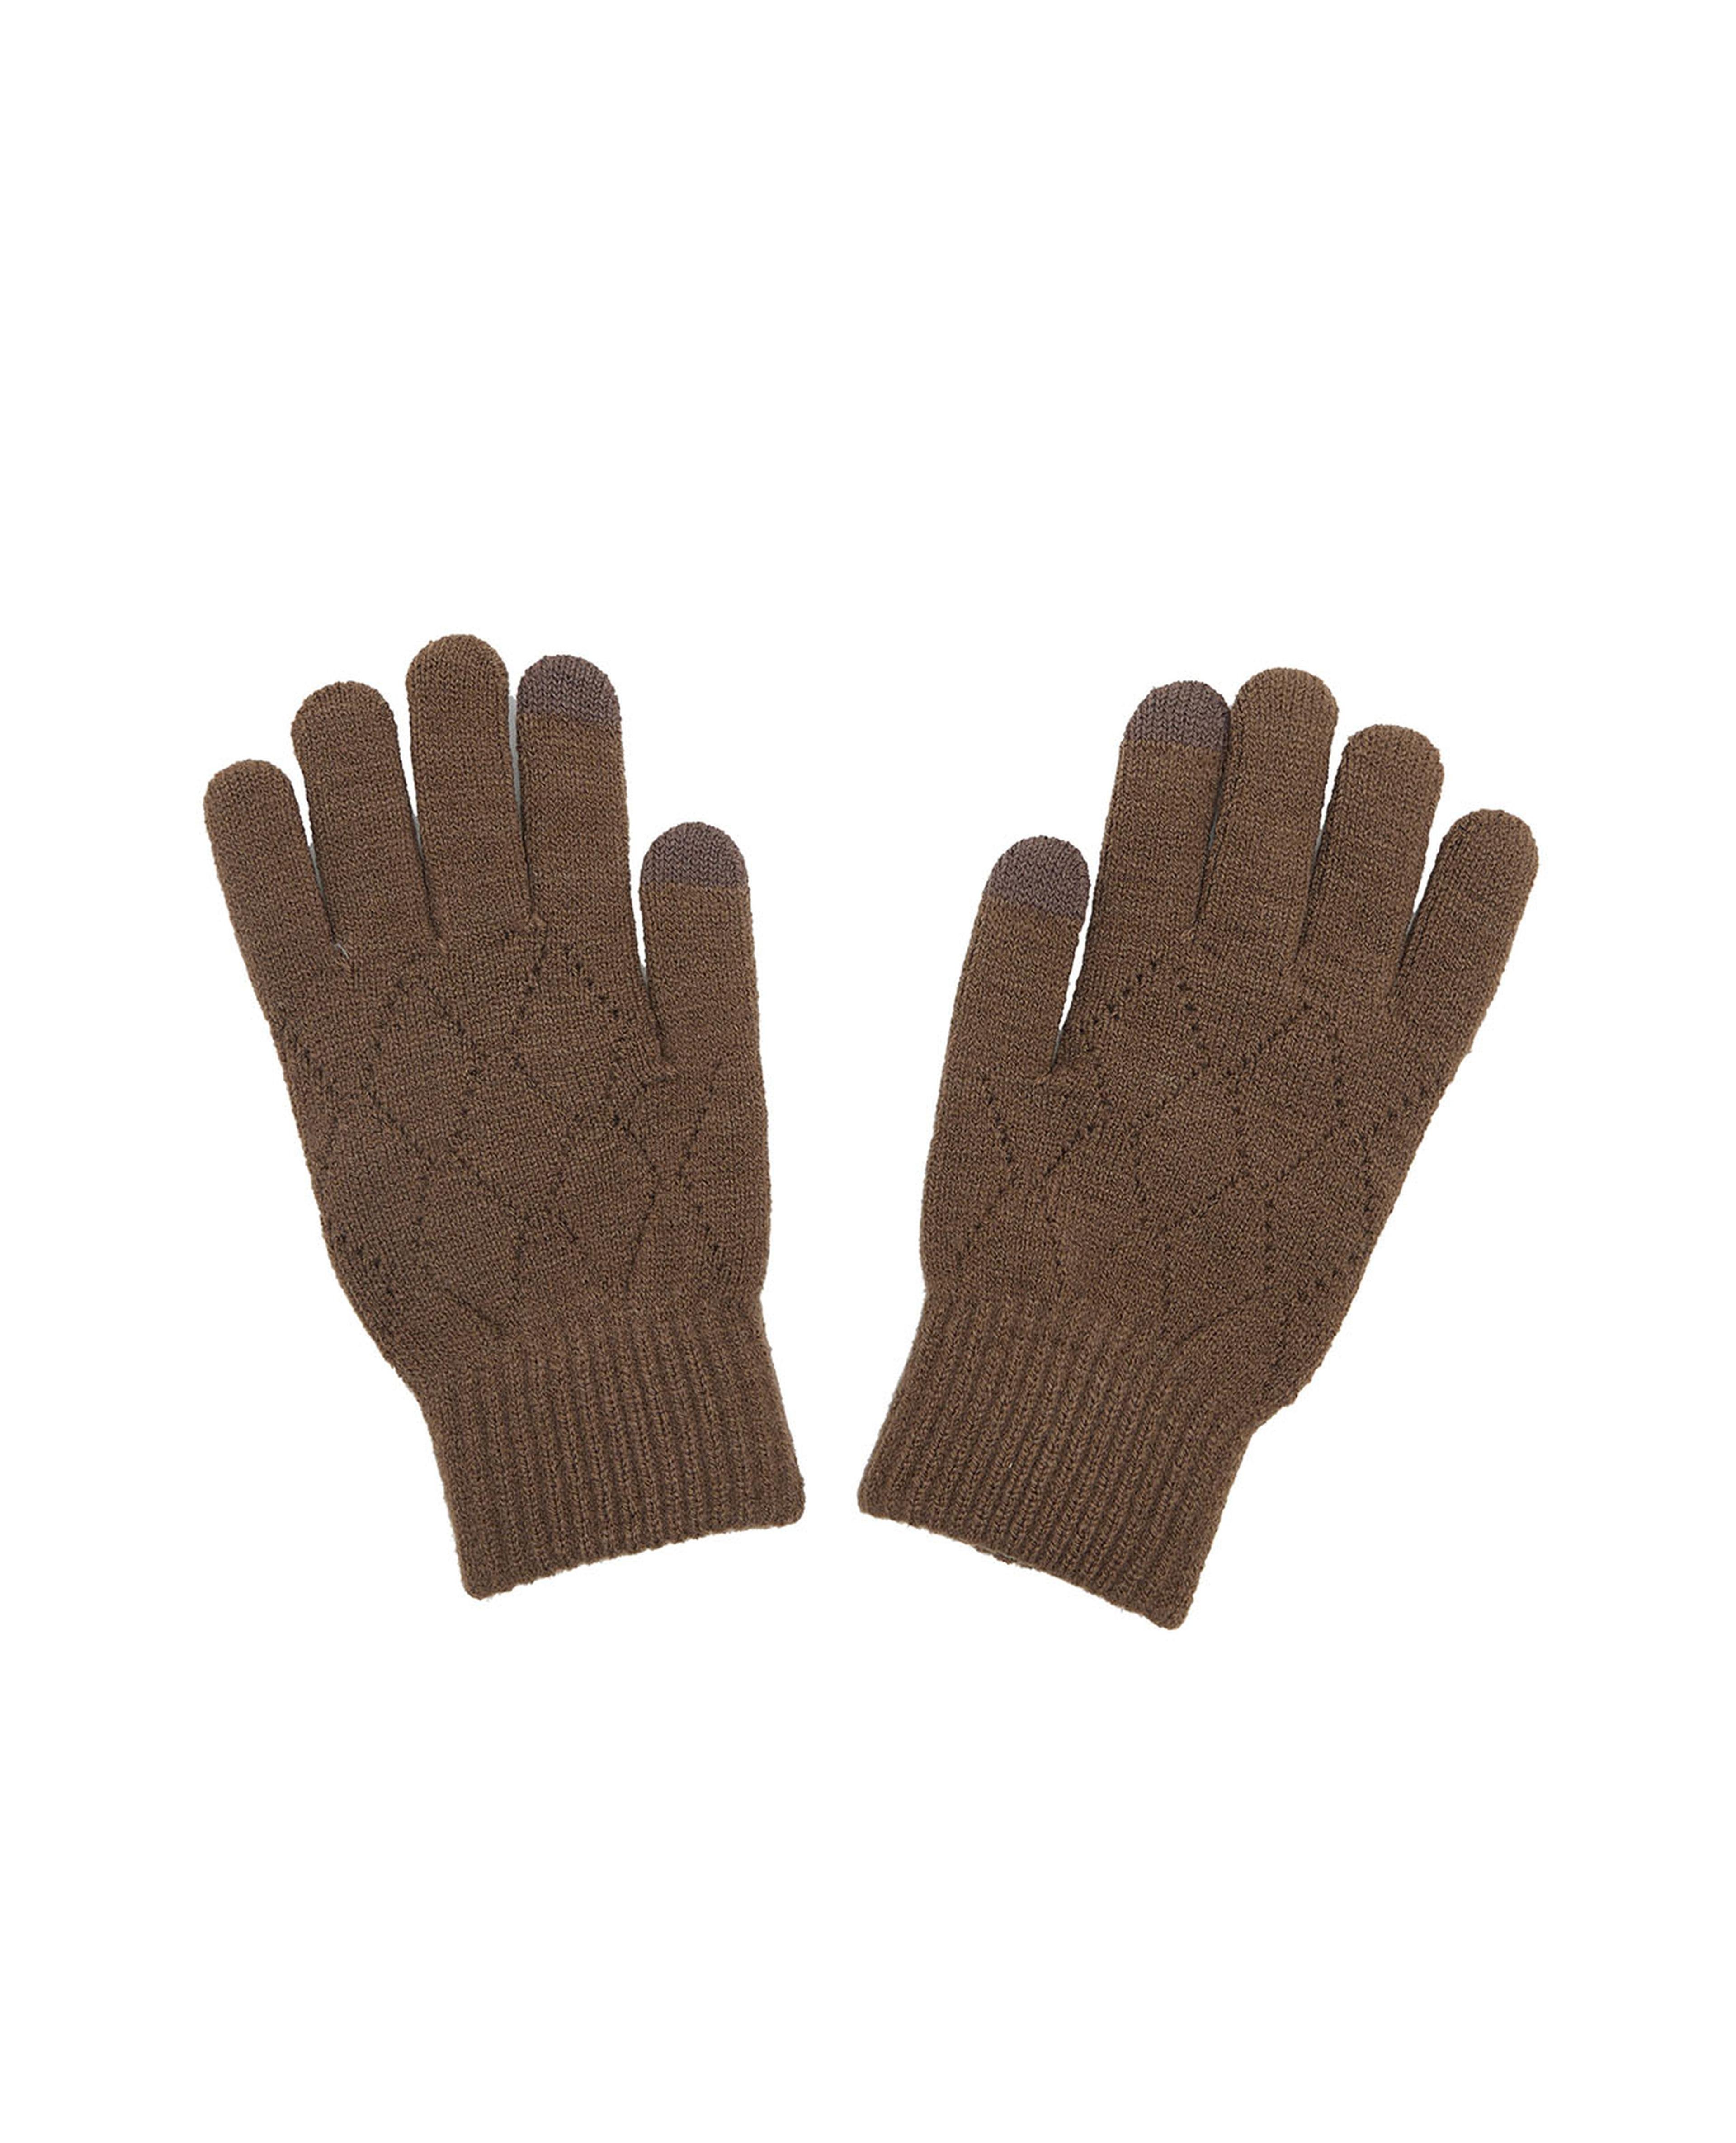 Self Patterned Knit Gloves